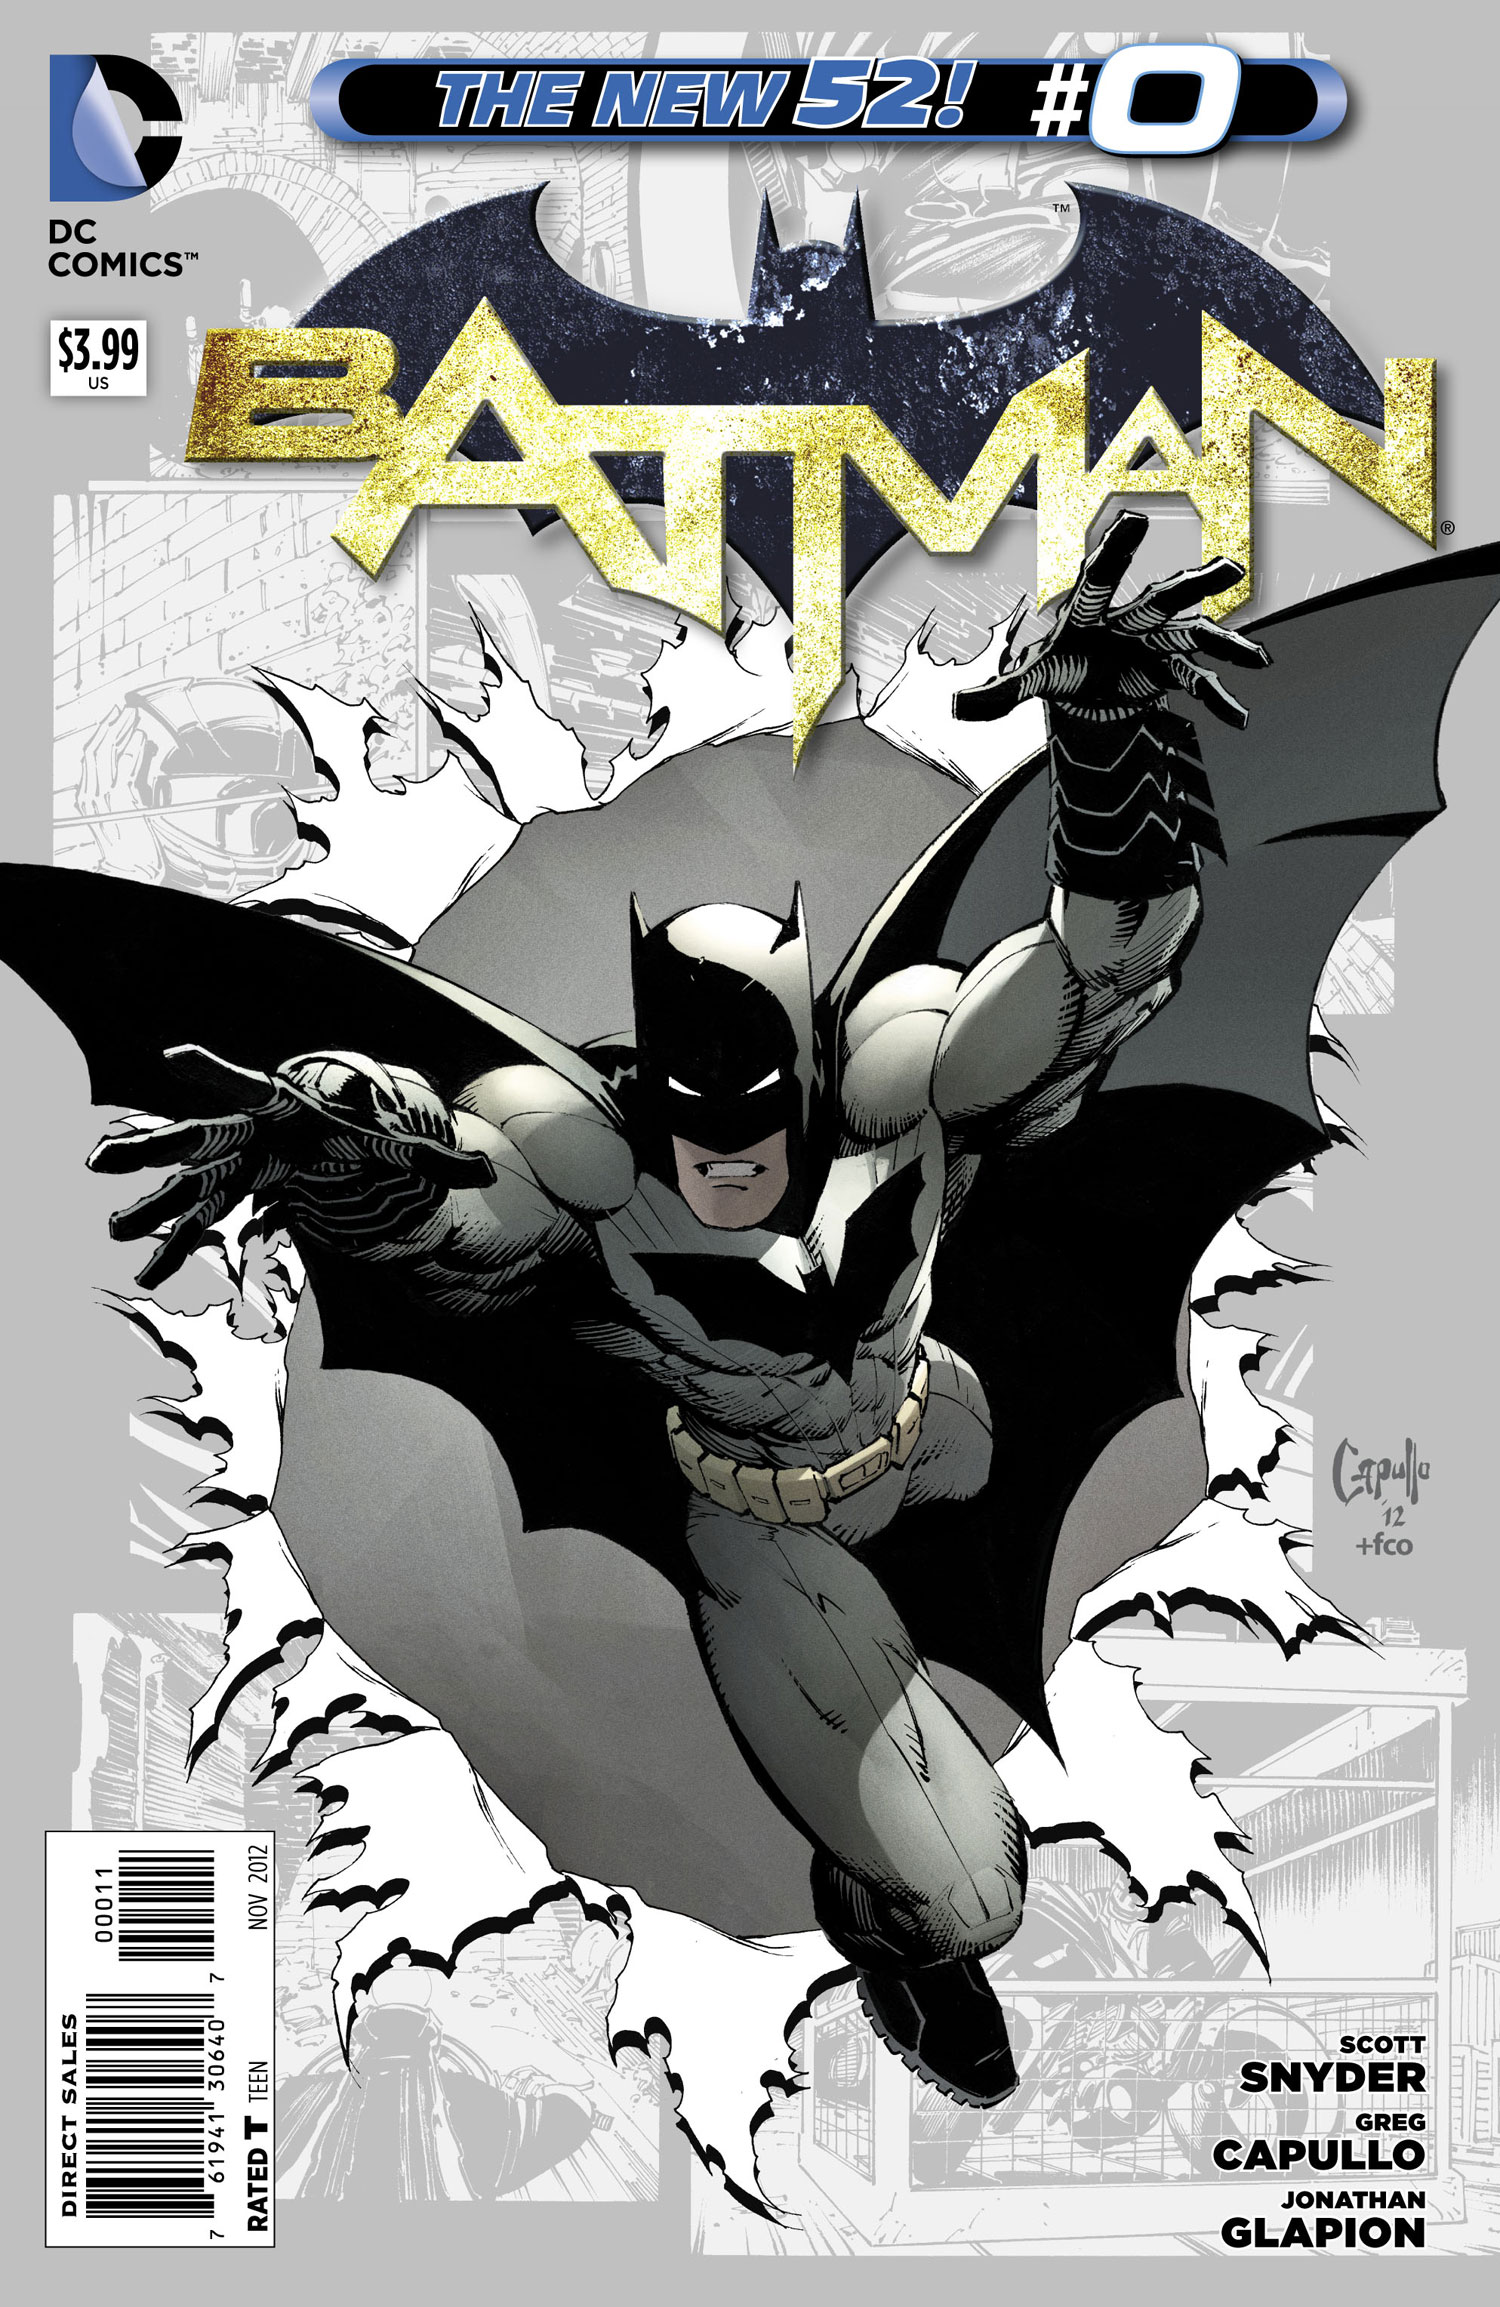 New 52 - Batman #0 review | Batman News